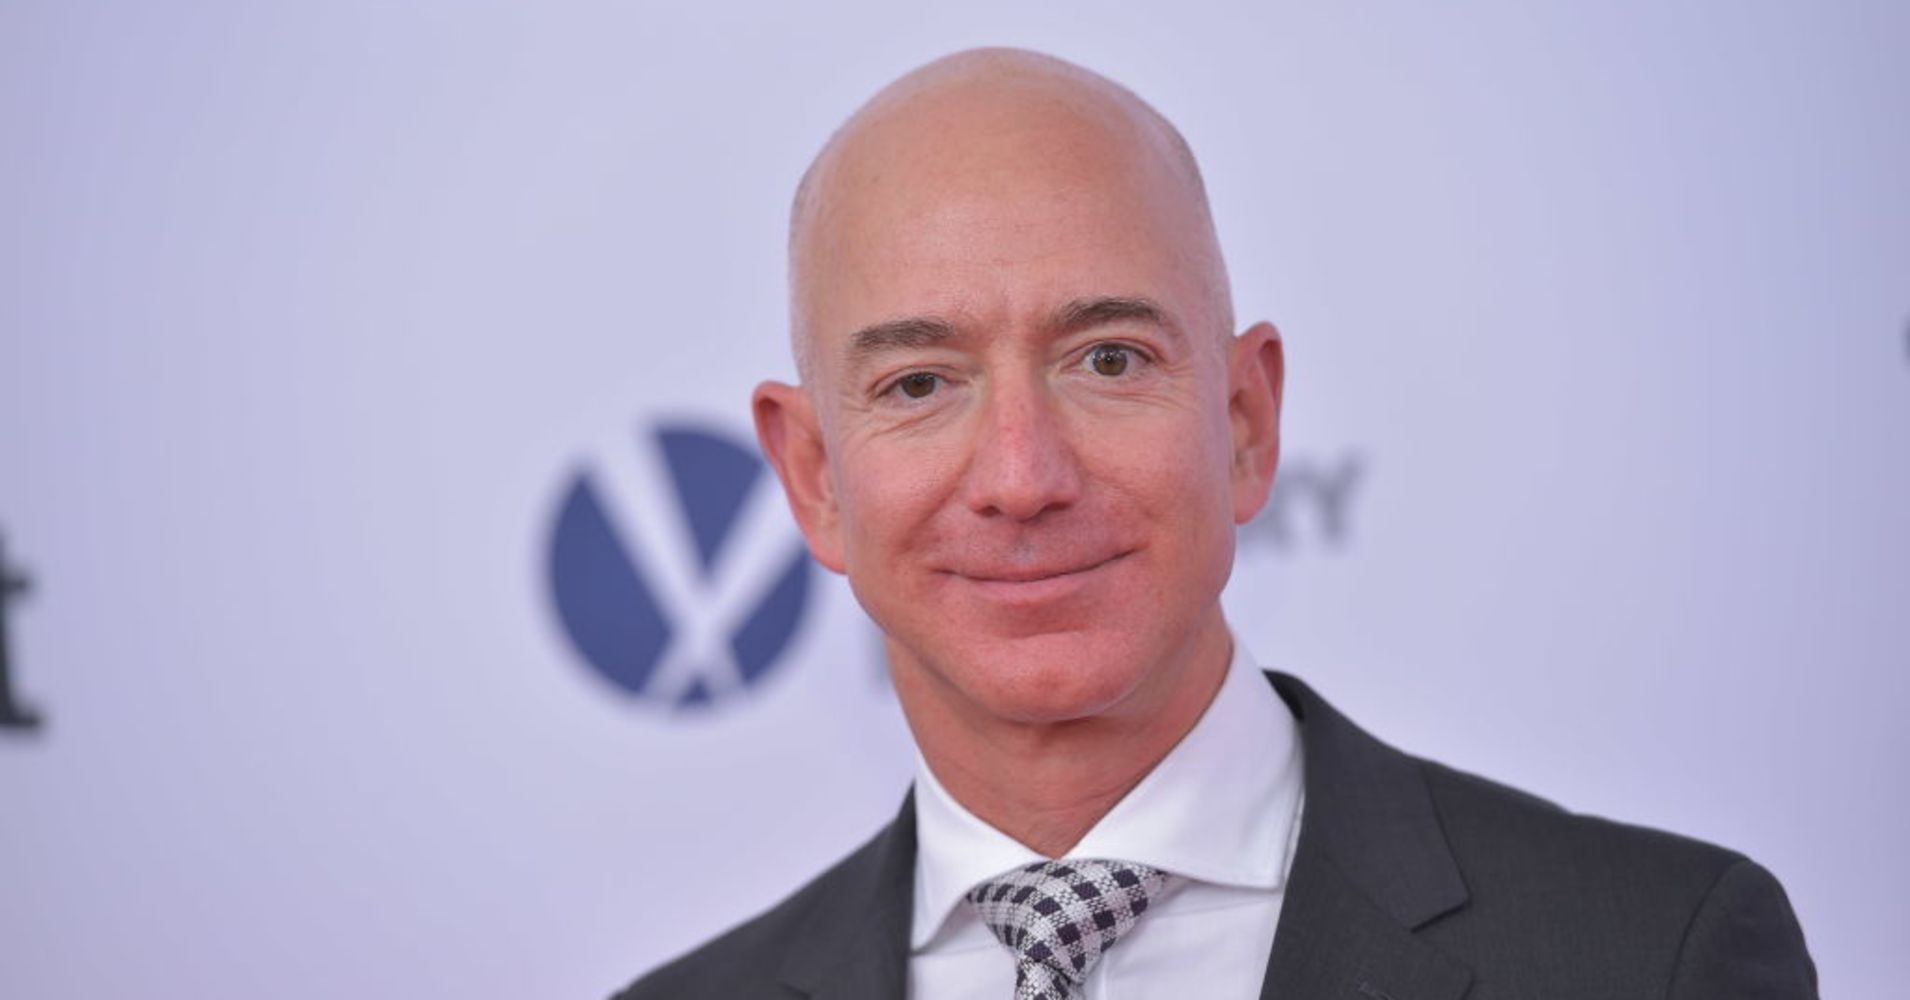   Jeff Bezos - ông chủ nổi tiếng của trang thương mại điện tử Amazon  